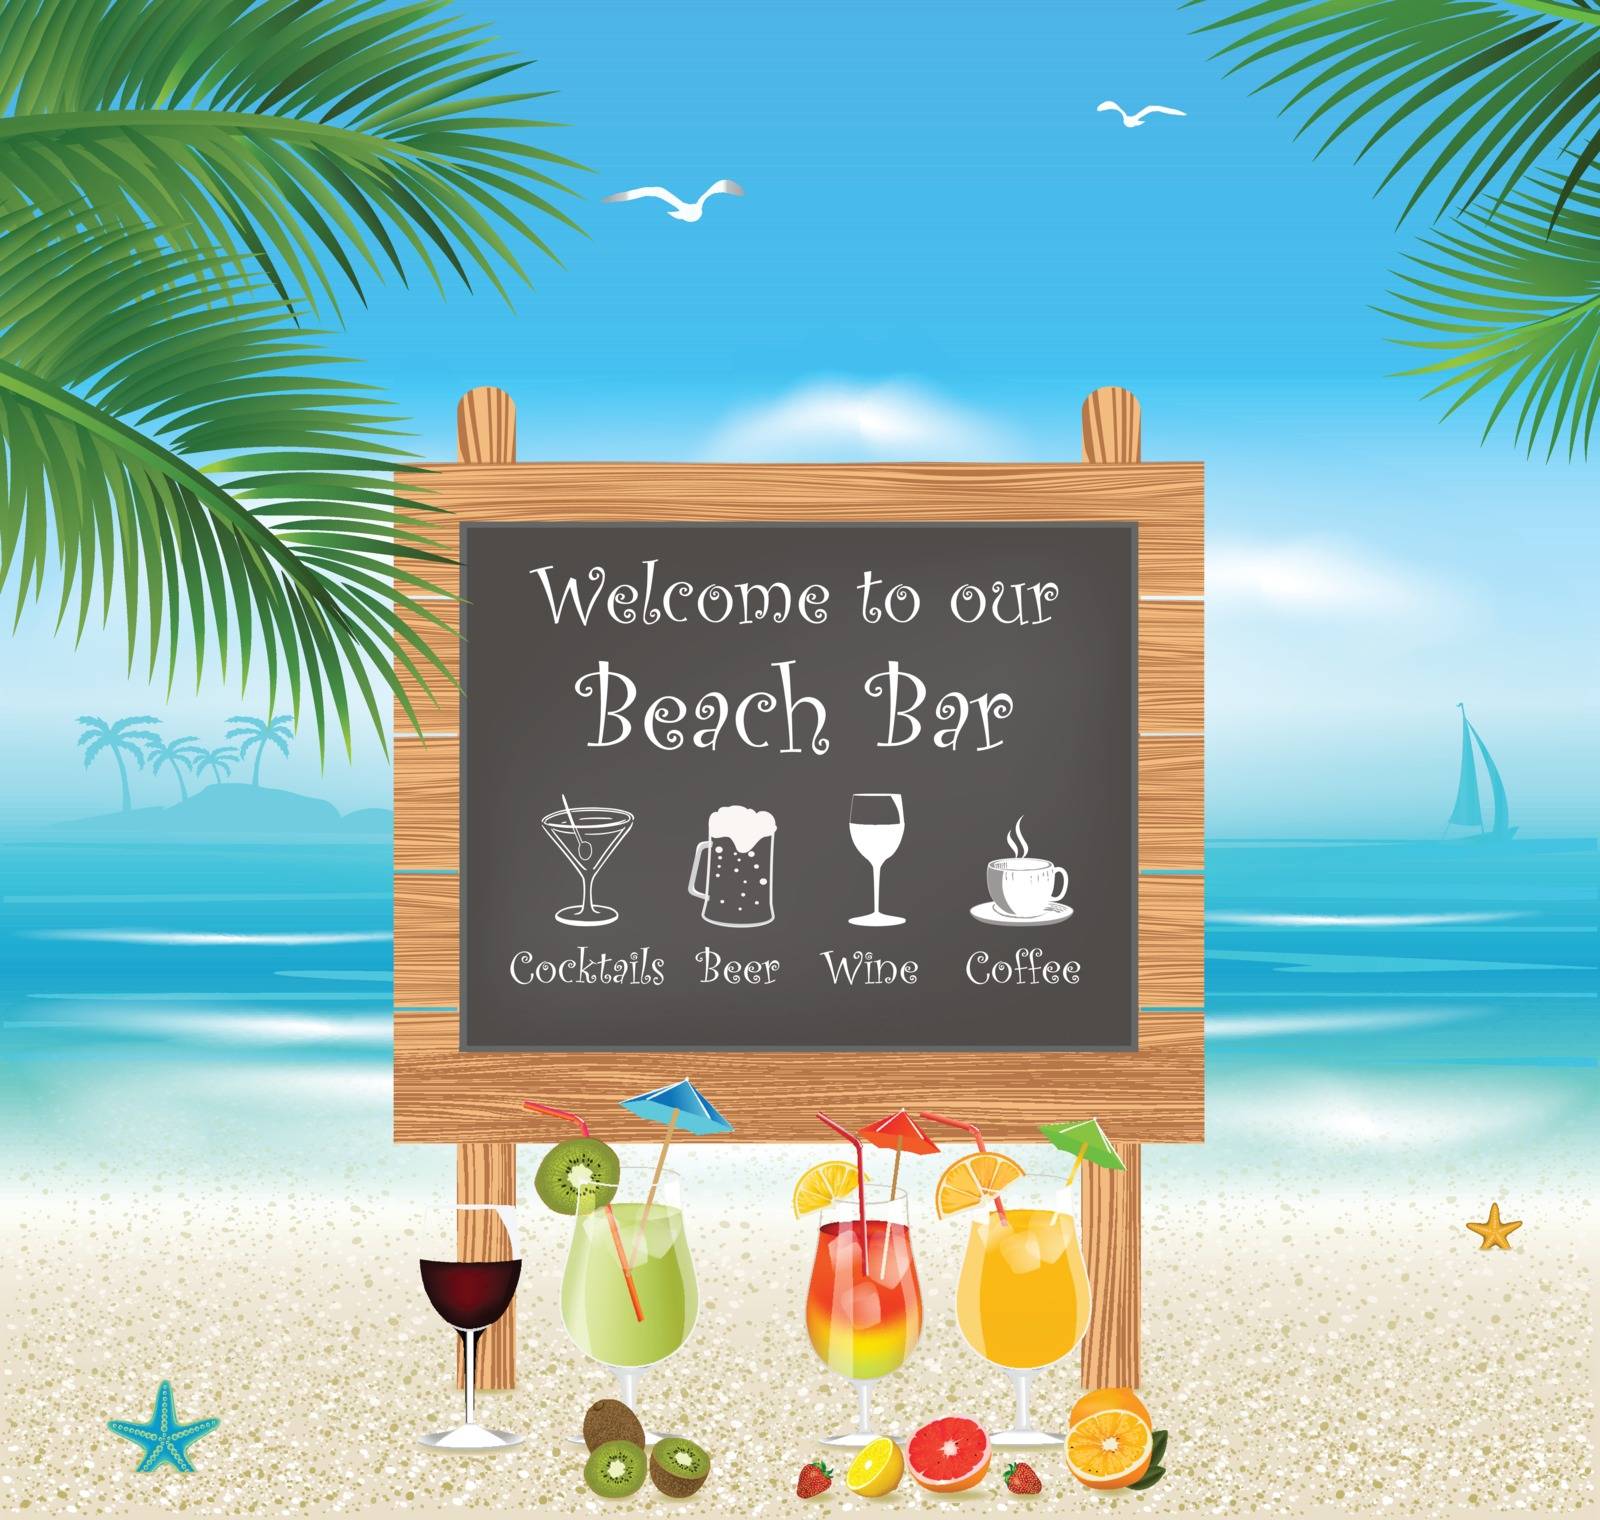 Beach bar menu by monicaodo